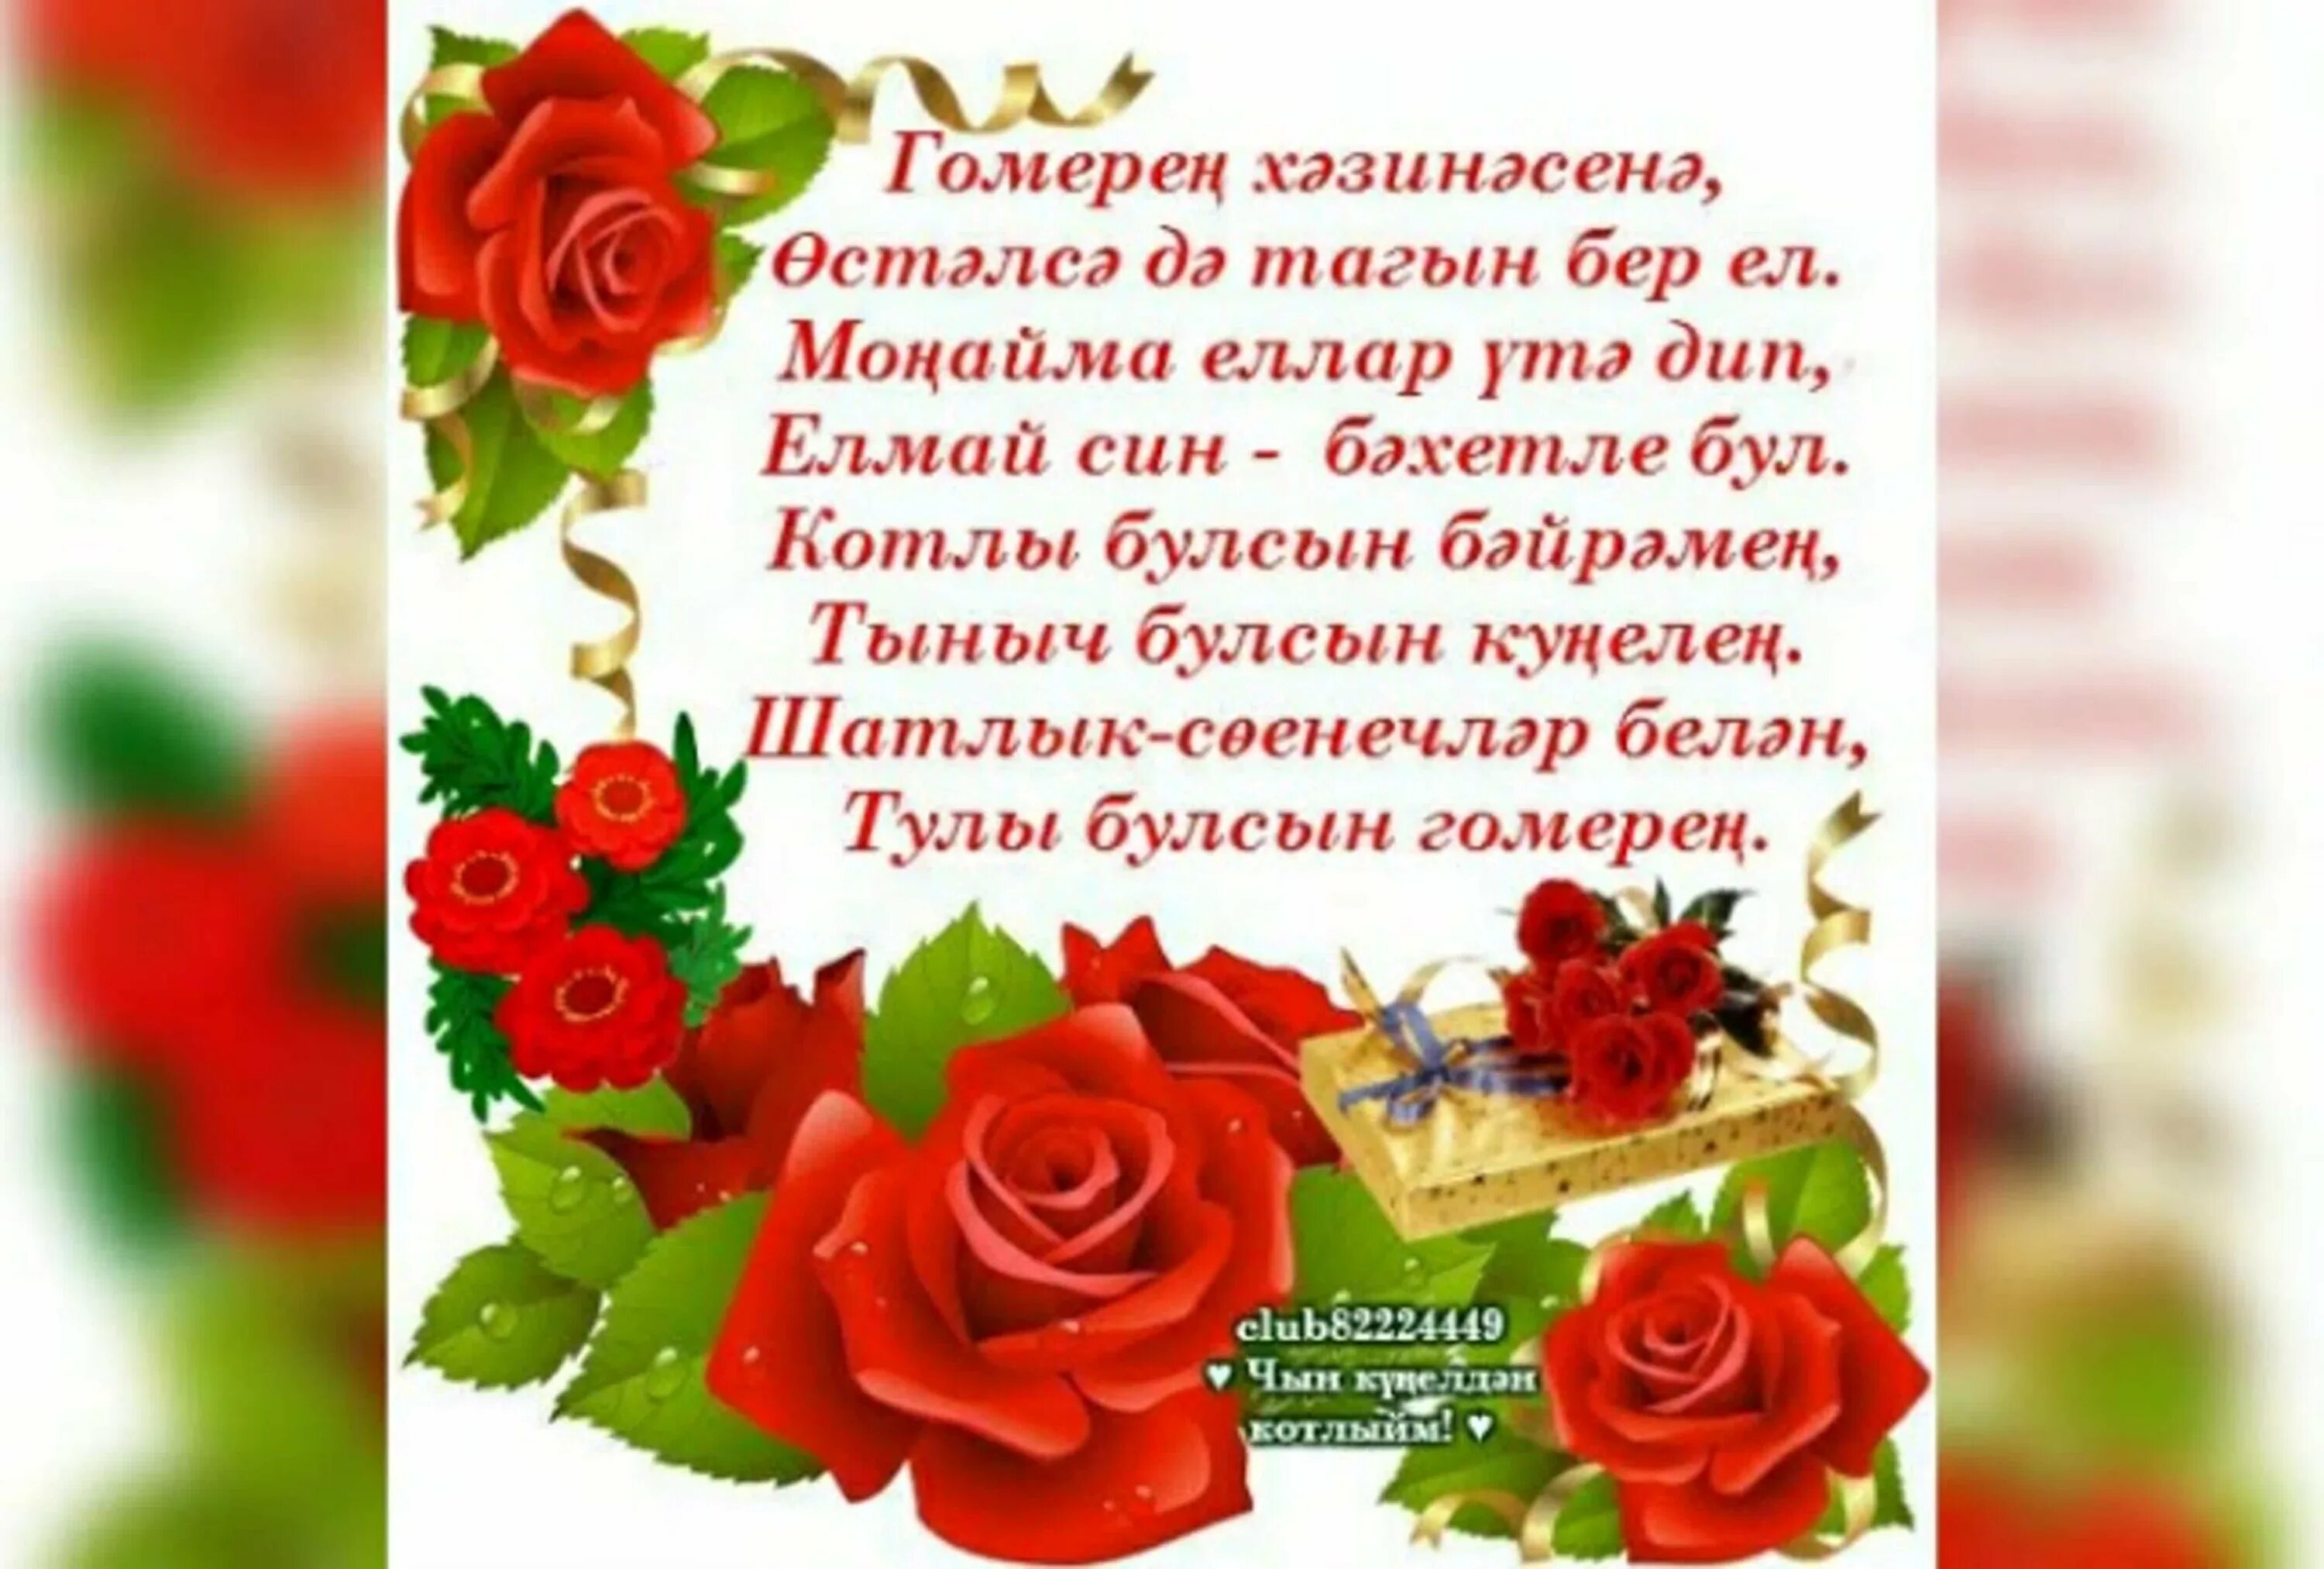 Туганым туган конен. Поздравления с днём рождения на татарском языке. Поздравление на татарском языке. Татарские поздравления с днем рождения. Поздравления с днём рождения женщине на татарском языке.